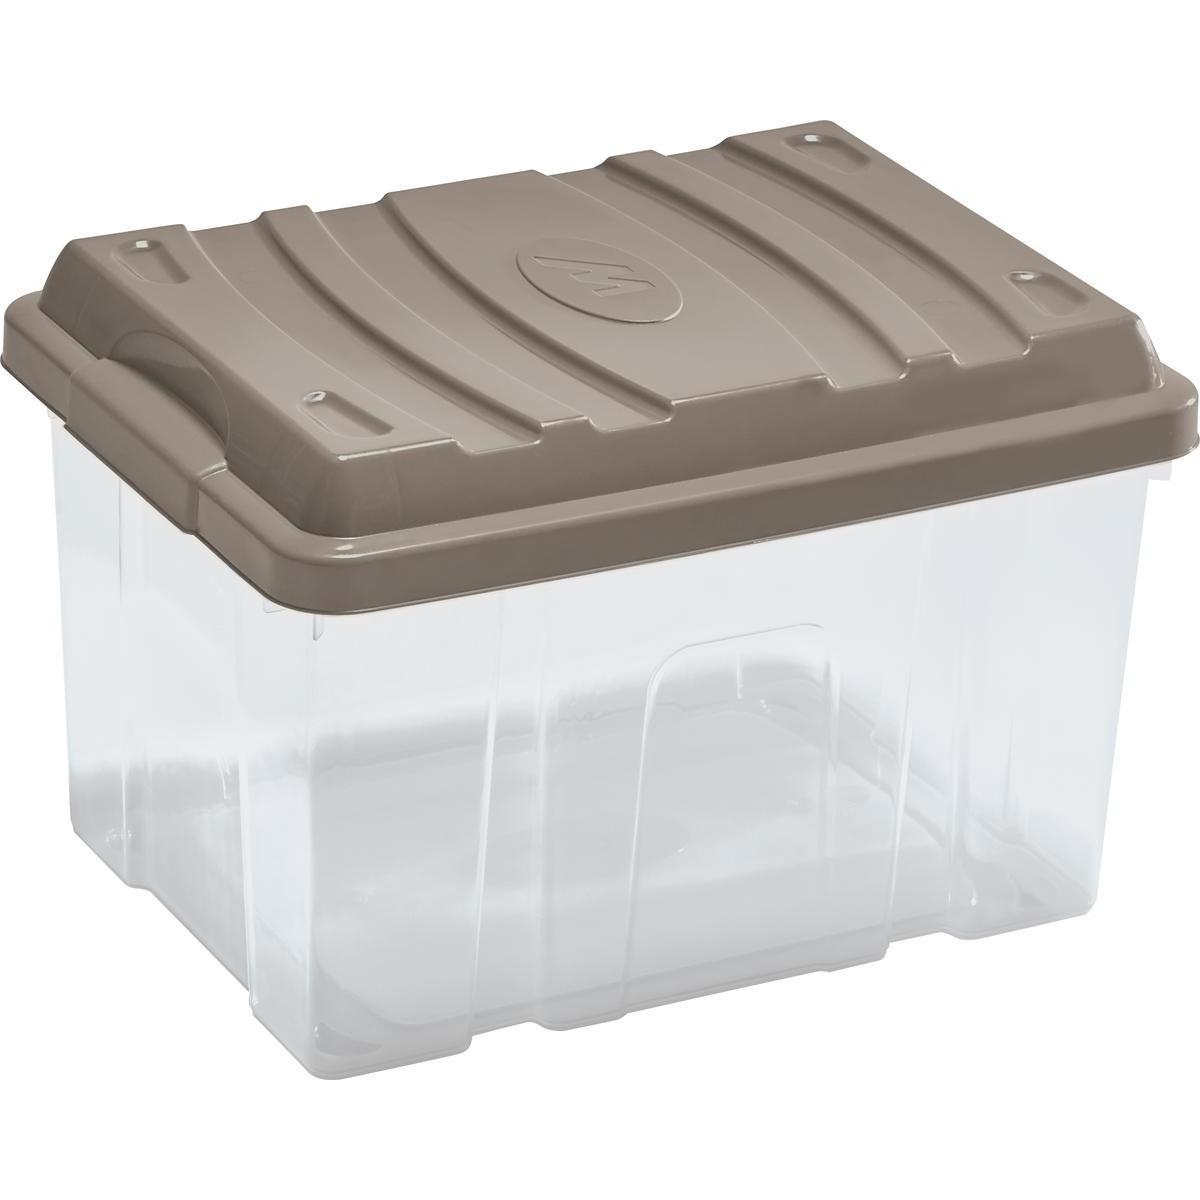 Box de rangement avec couvercle - Plastique - 40 x 30 x H 26 cm - Beige